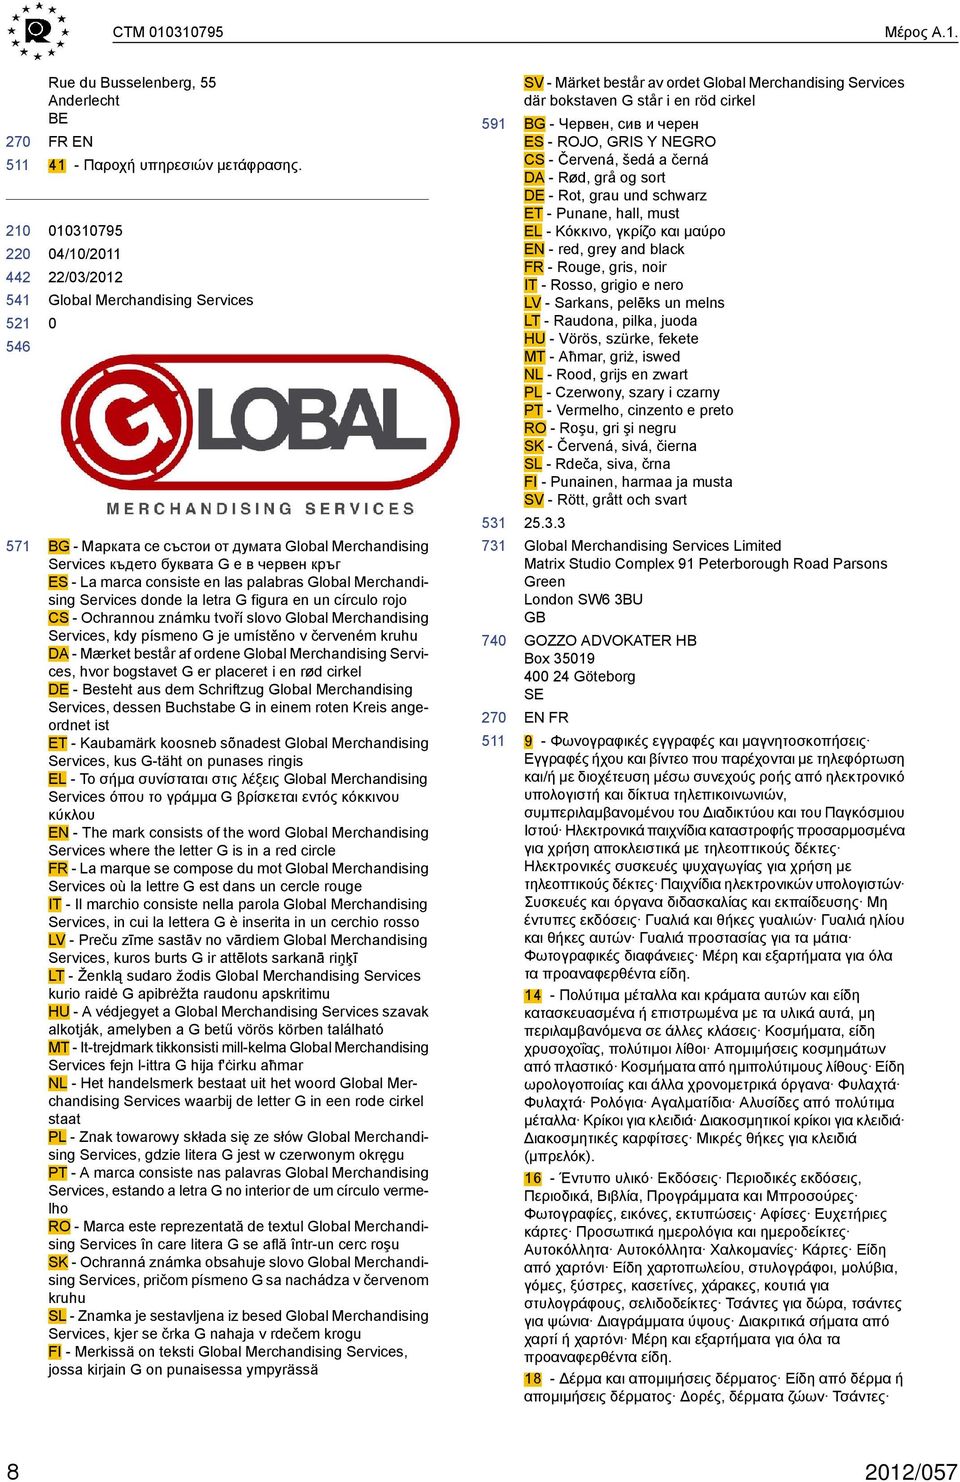 Merchandising Services donde la letra G figura en un círculo rojo CS - Ochrannou známku tvoří slovo Global Merchandising Services, kdy písmeno G je umístěno v červeném kruhu DA - Mærket består af